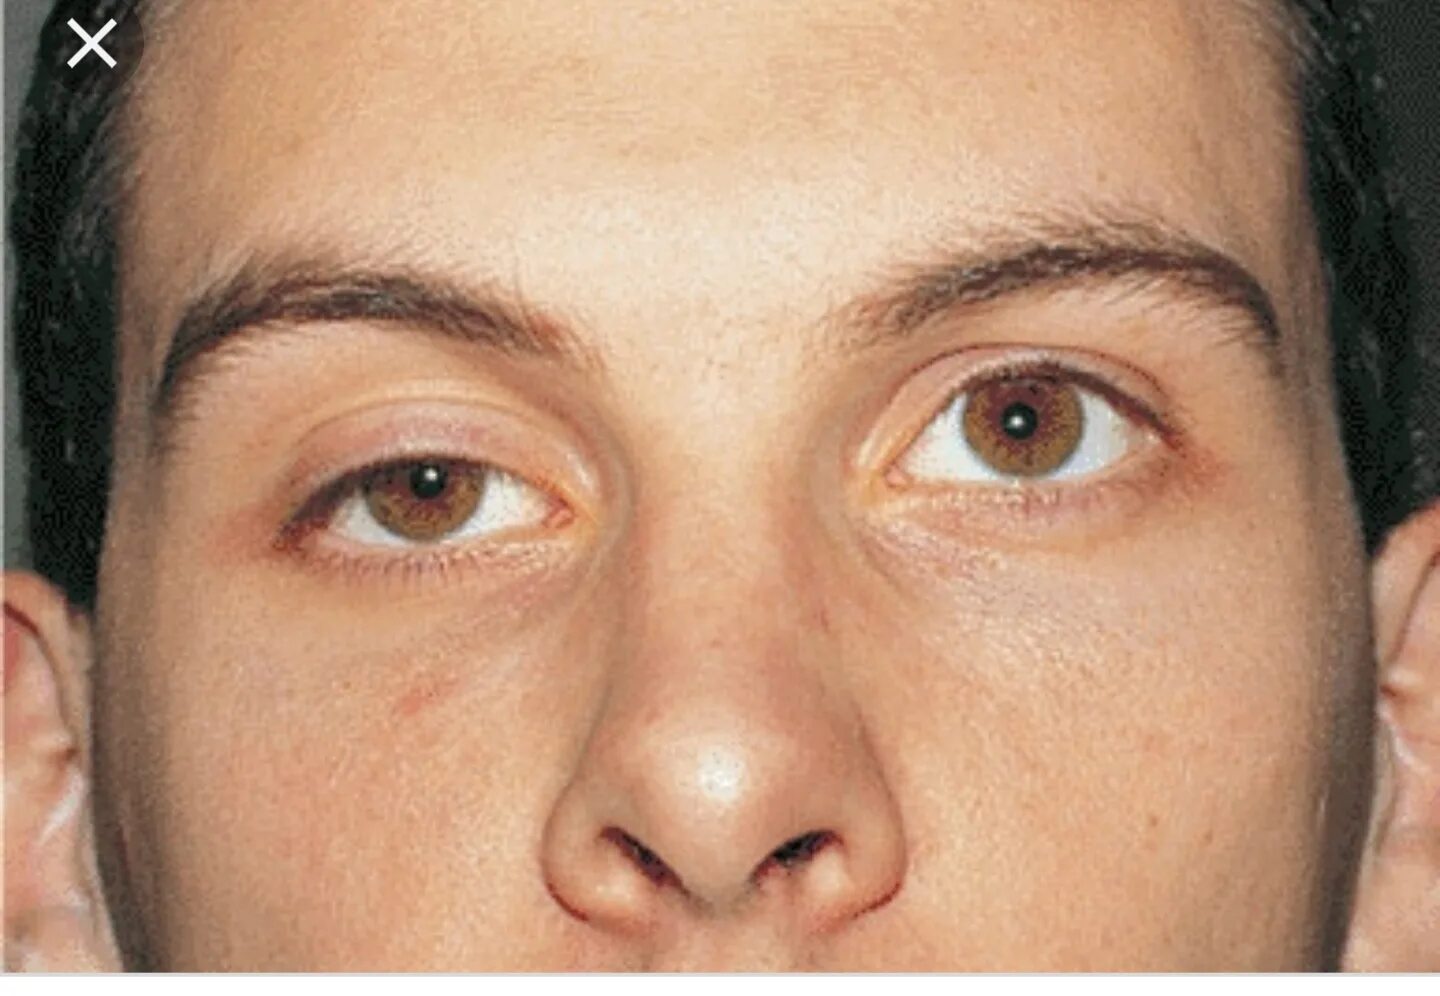 Птоз,наружная офтальмоплегия. Экзофтальм анизокория. Экзофтальм птоз офтальмоплегия. Левый глаз темнее правого